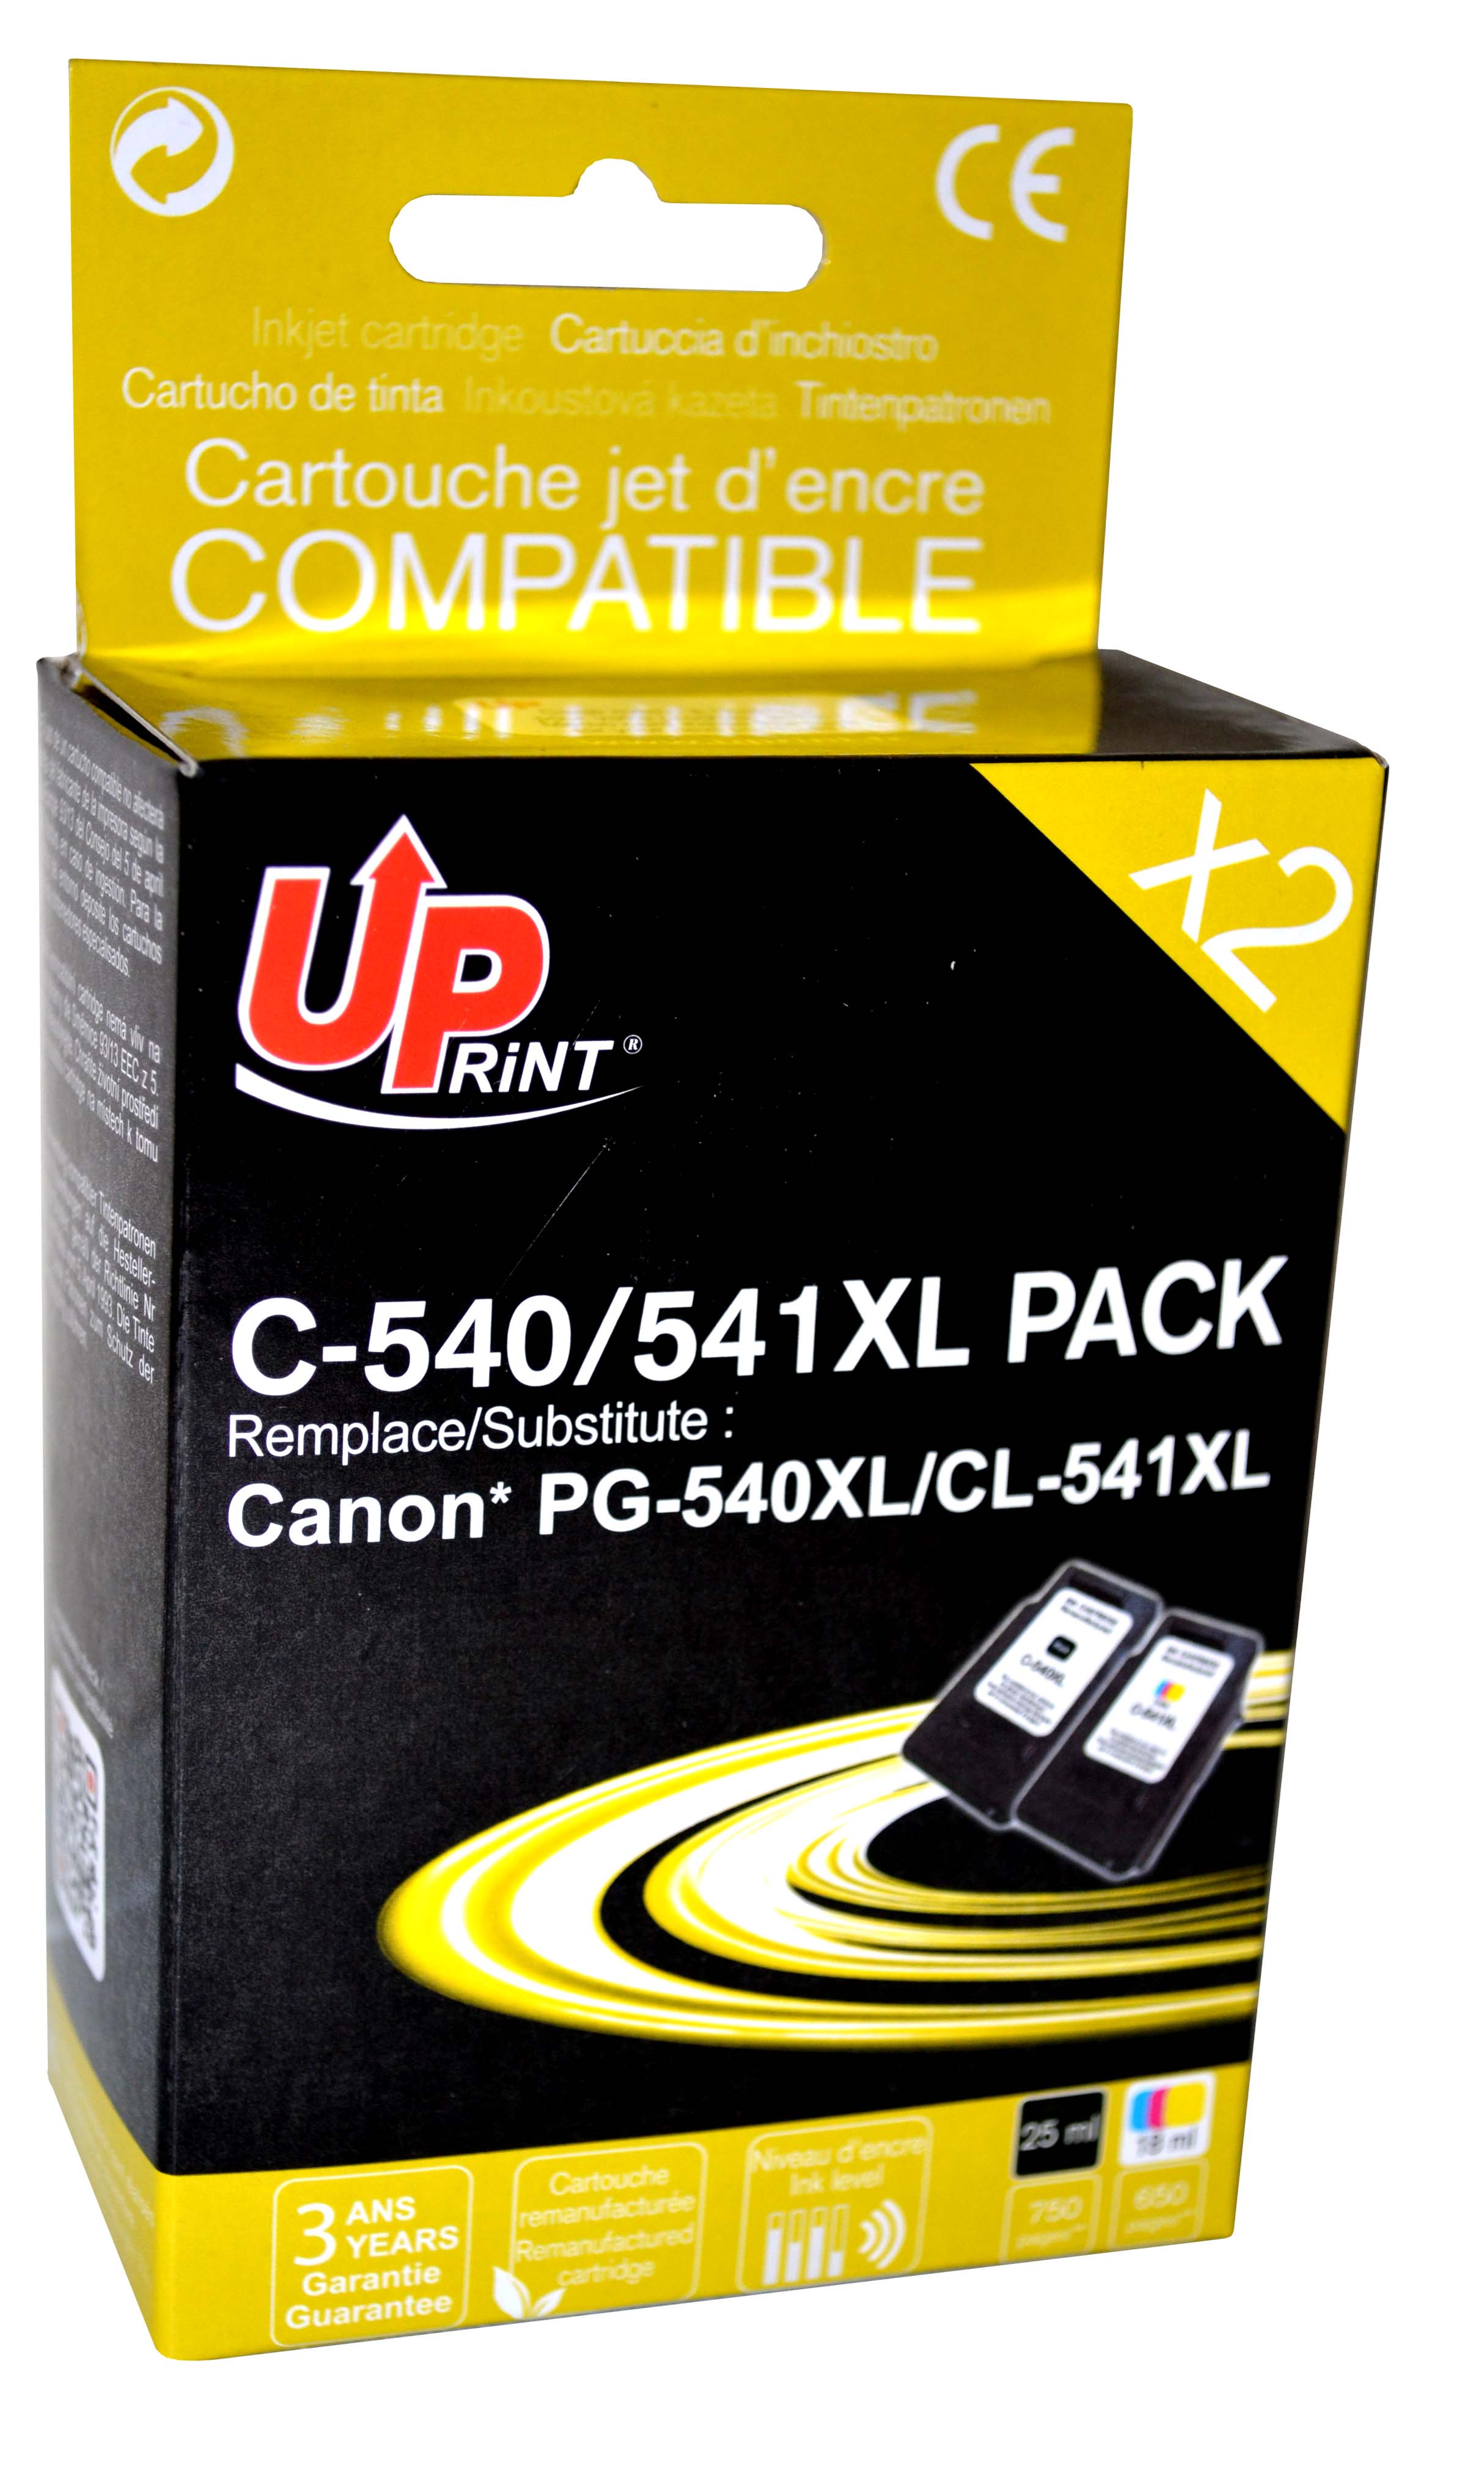 Pack PREMIUM compatible CANON PG-540XL/CL-541XL, 2 cartouches